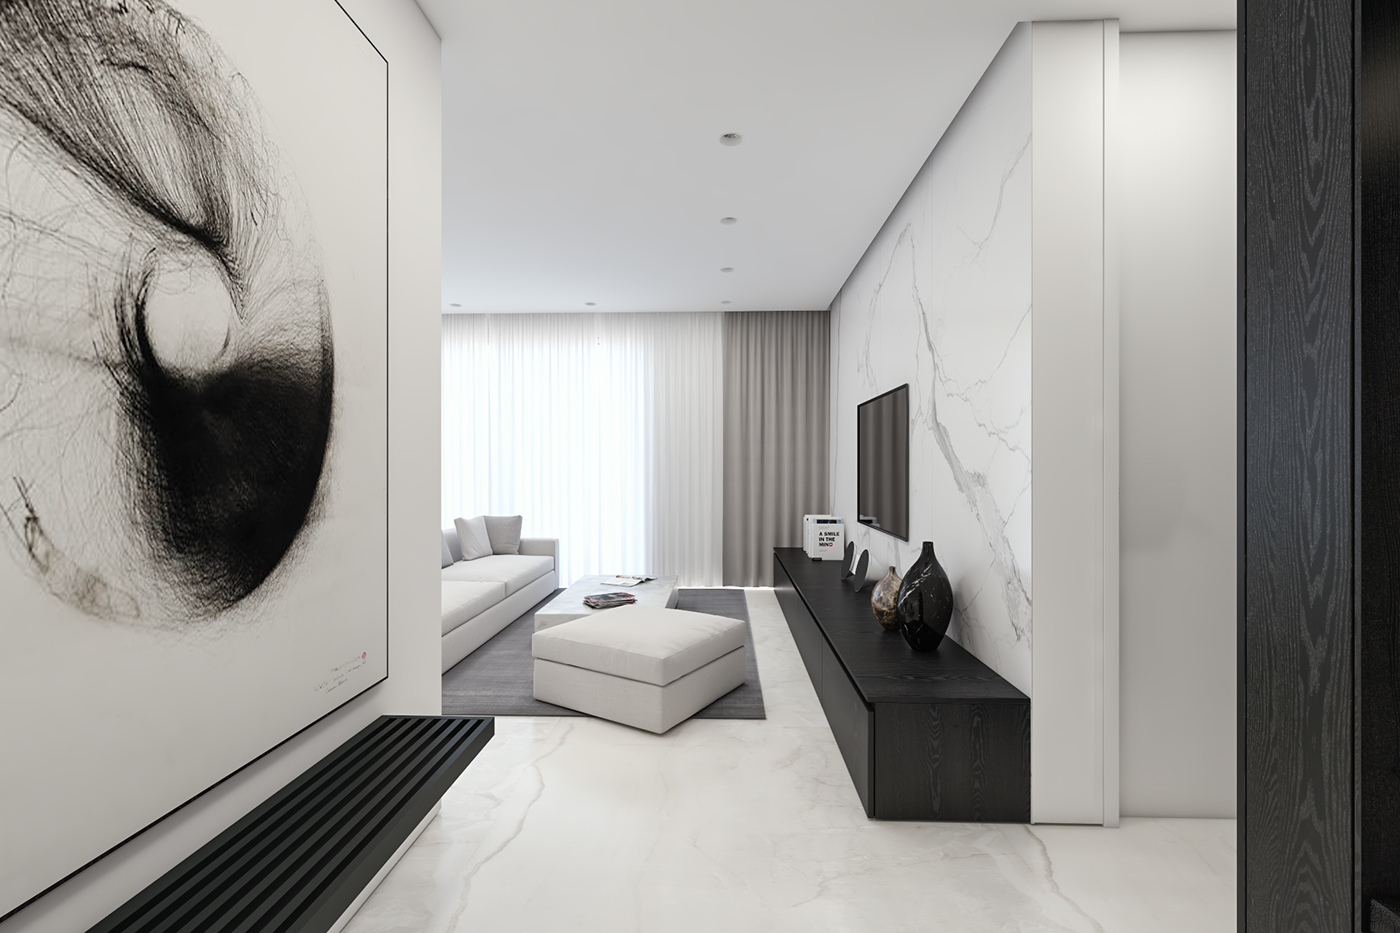 concept design Interior White black minimal apartment home interiordesign architecture